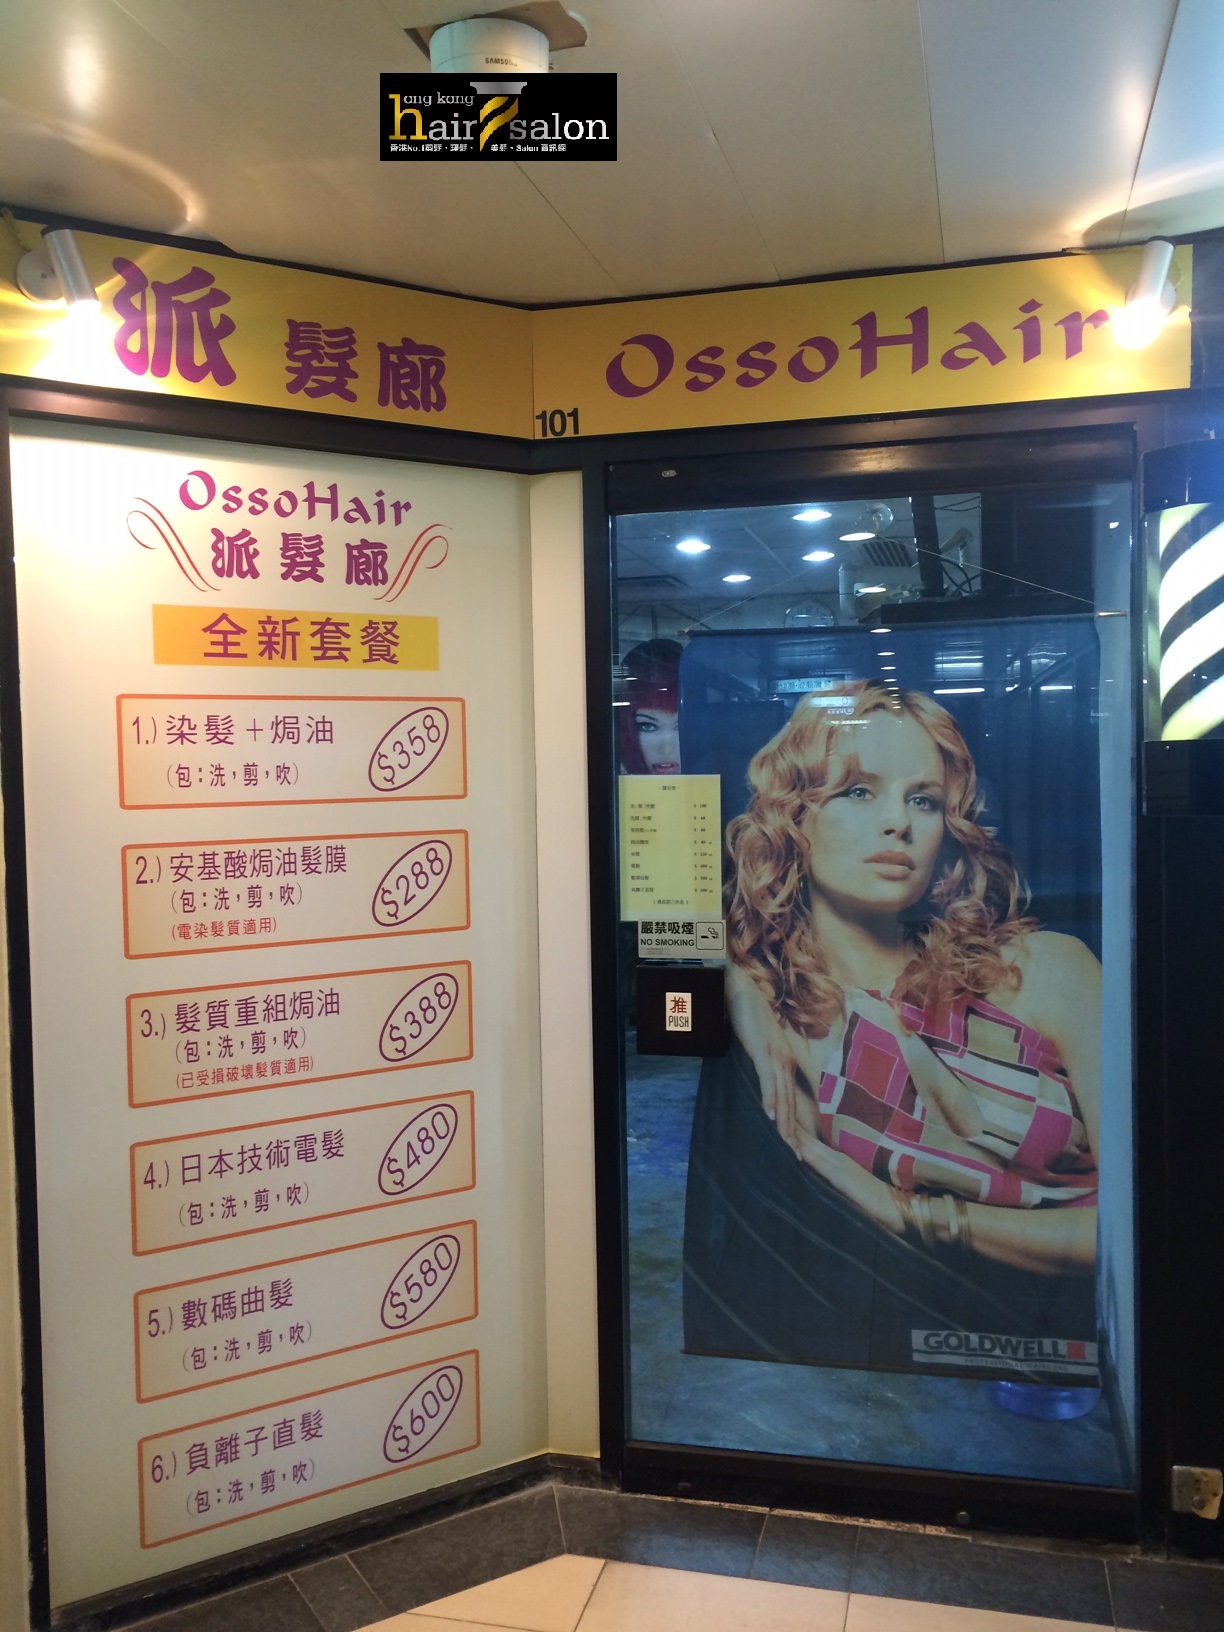 電髮/負離子: Osso Hair 派髮廊